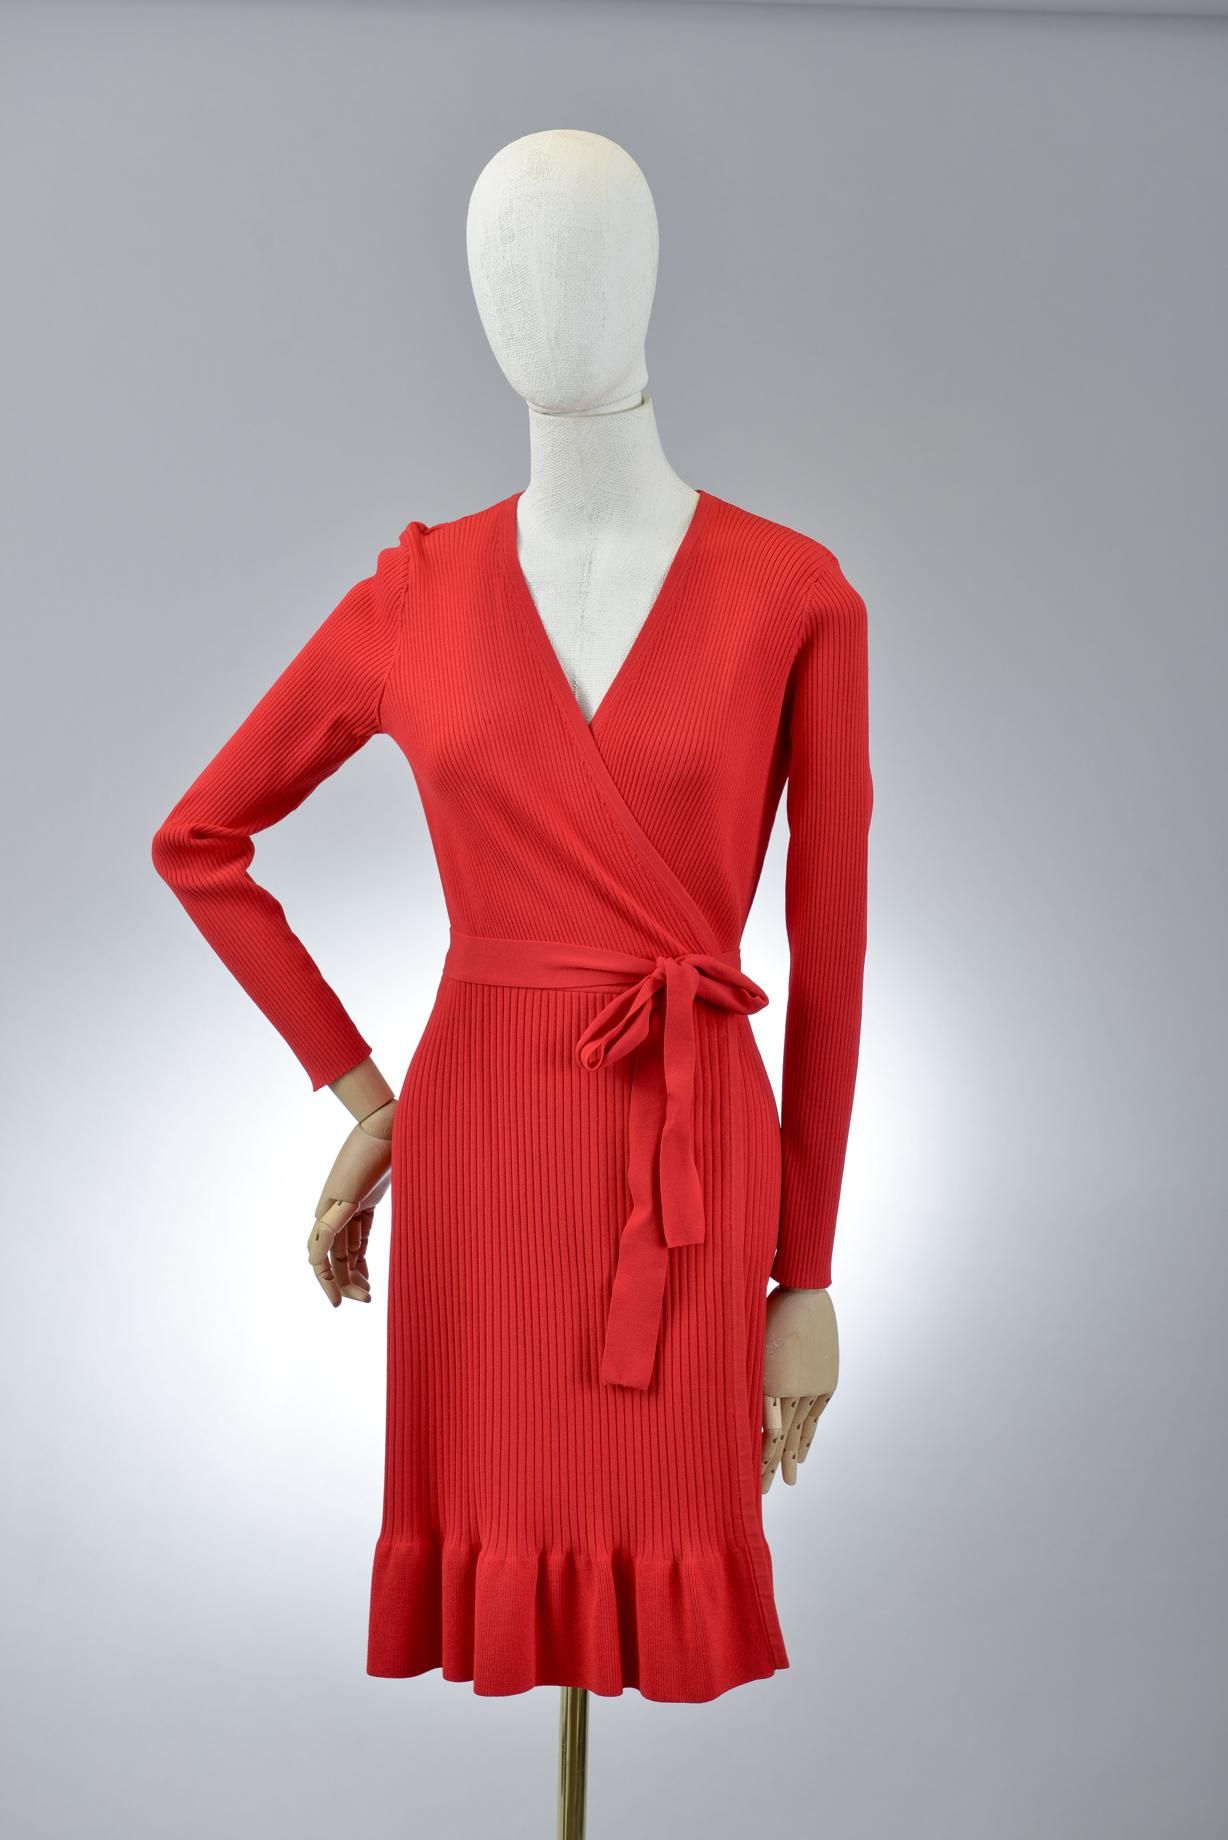 Null *尺寸XXS DVF - Diane Von Fürstenberg

套装包括。

-主要是粘胶材质的裹身裙，型号为 "DVF Kienna"，颜色&hellip;